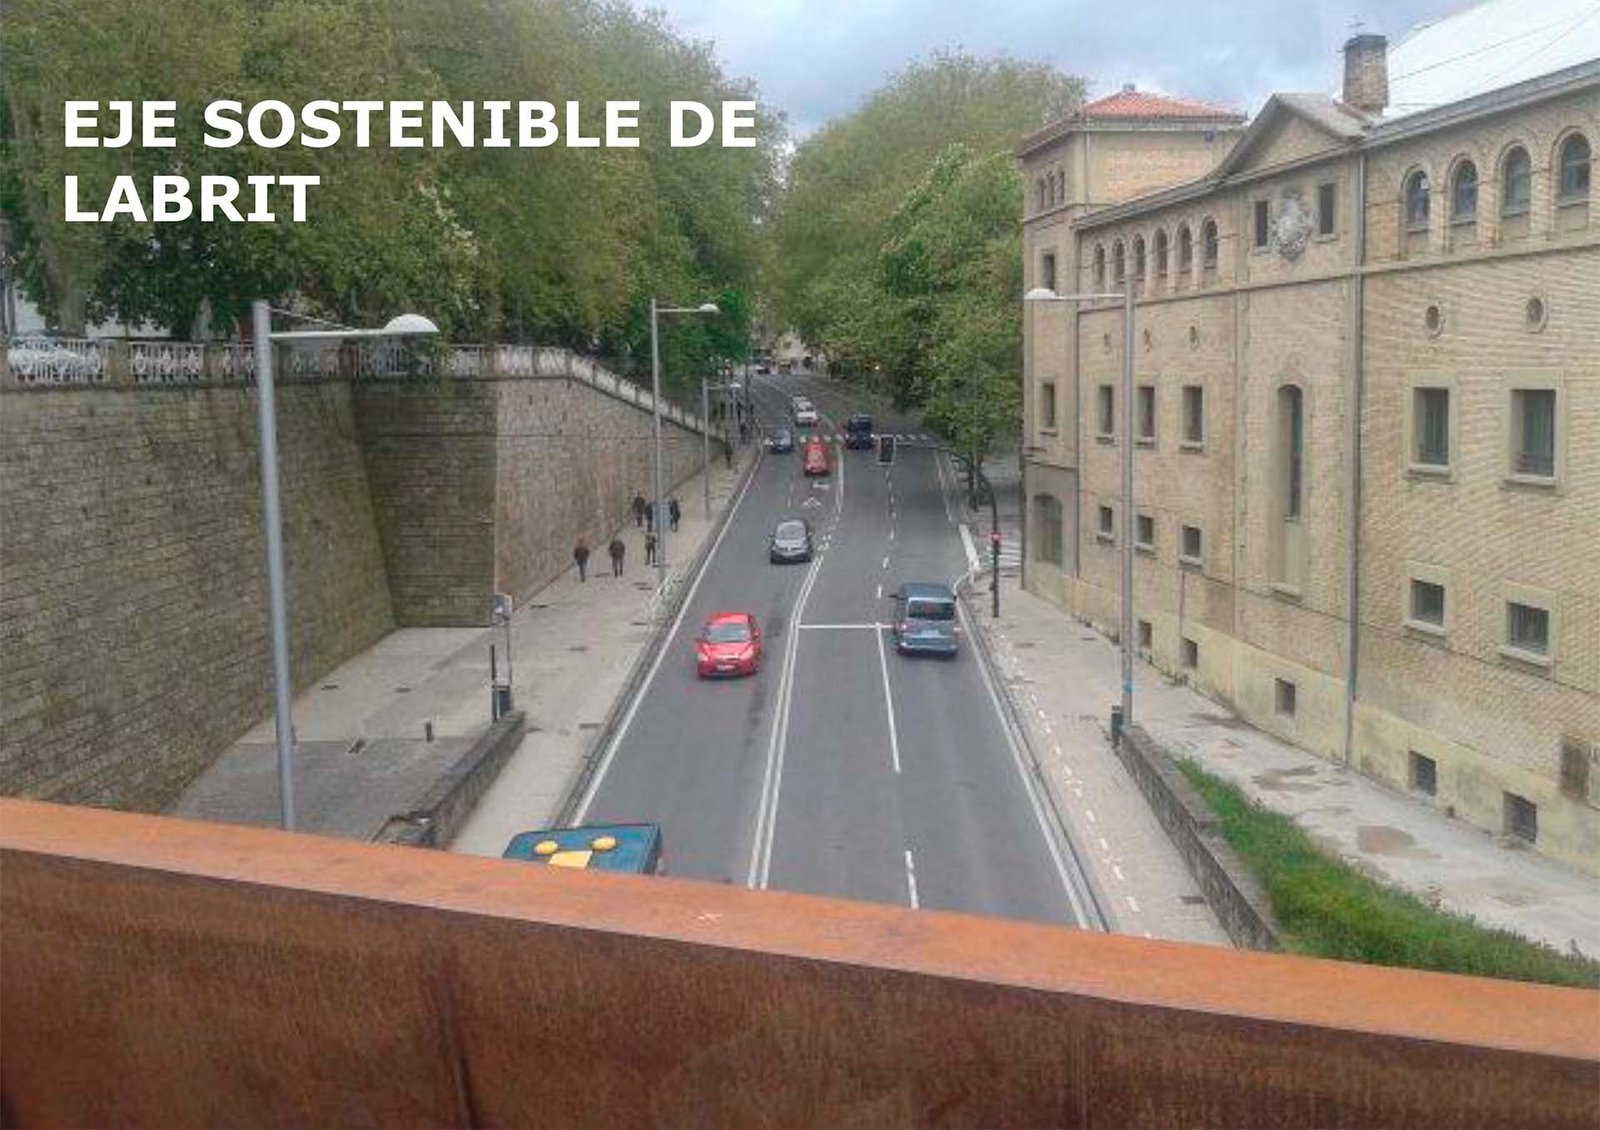 El Ayuntamiento presenta el anteproyecto del Eje Sostenible de Labrit que incluye carril-bici de doble sentido y mejoras para transporte público y peatones